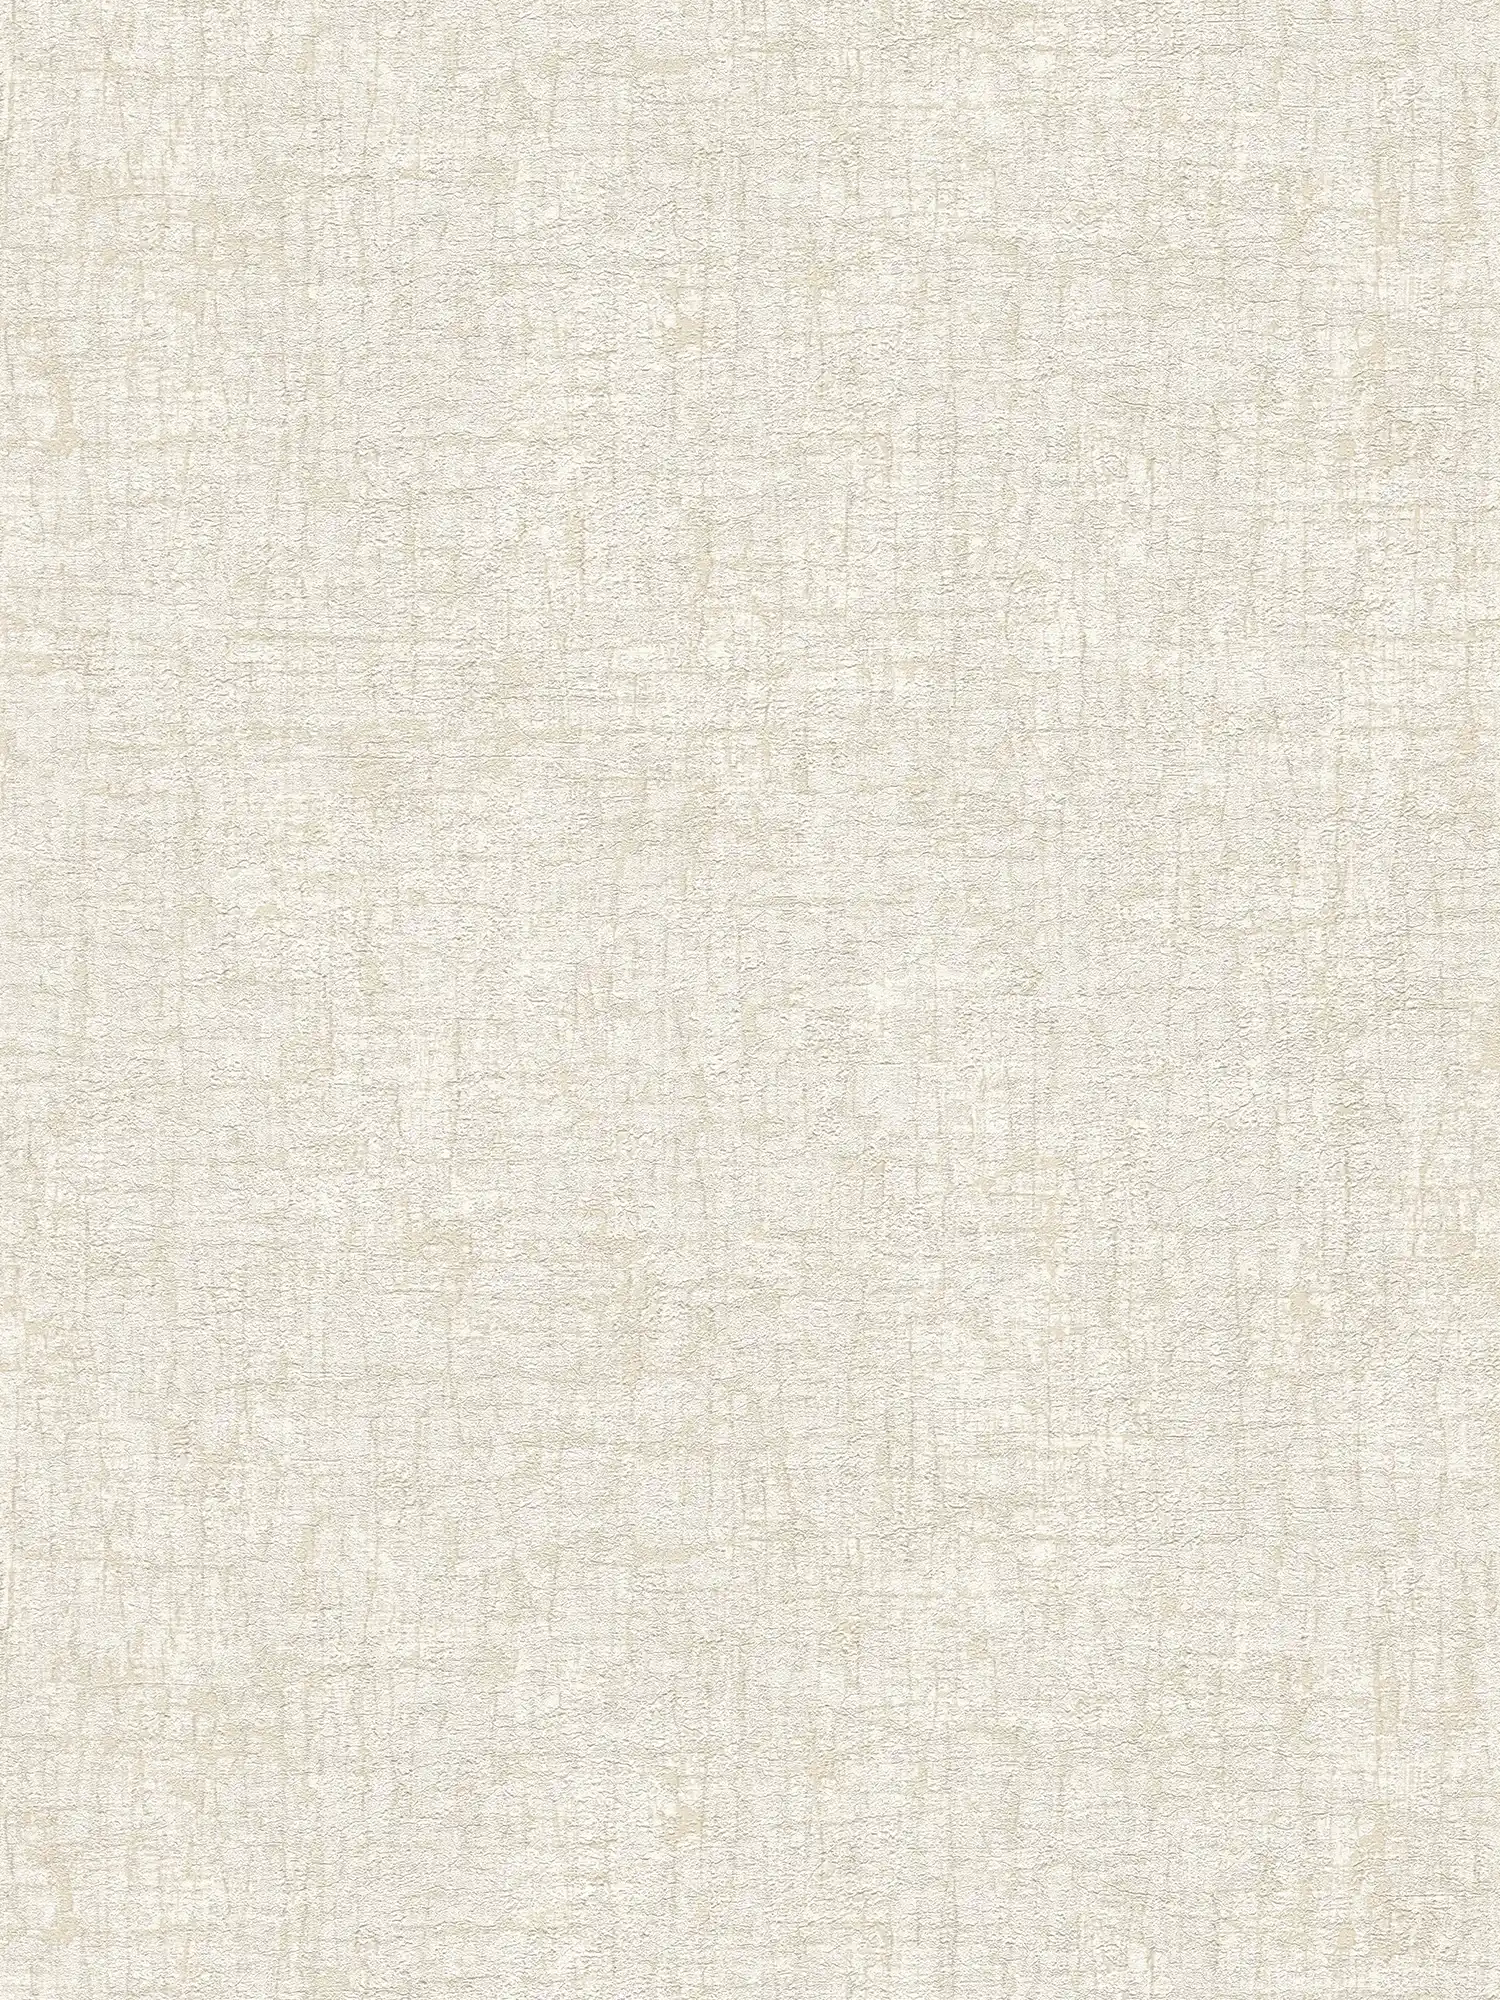 Vliesbehang met textuur in zachte kleuren textiellook - wit, beige, crème
